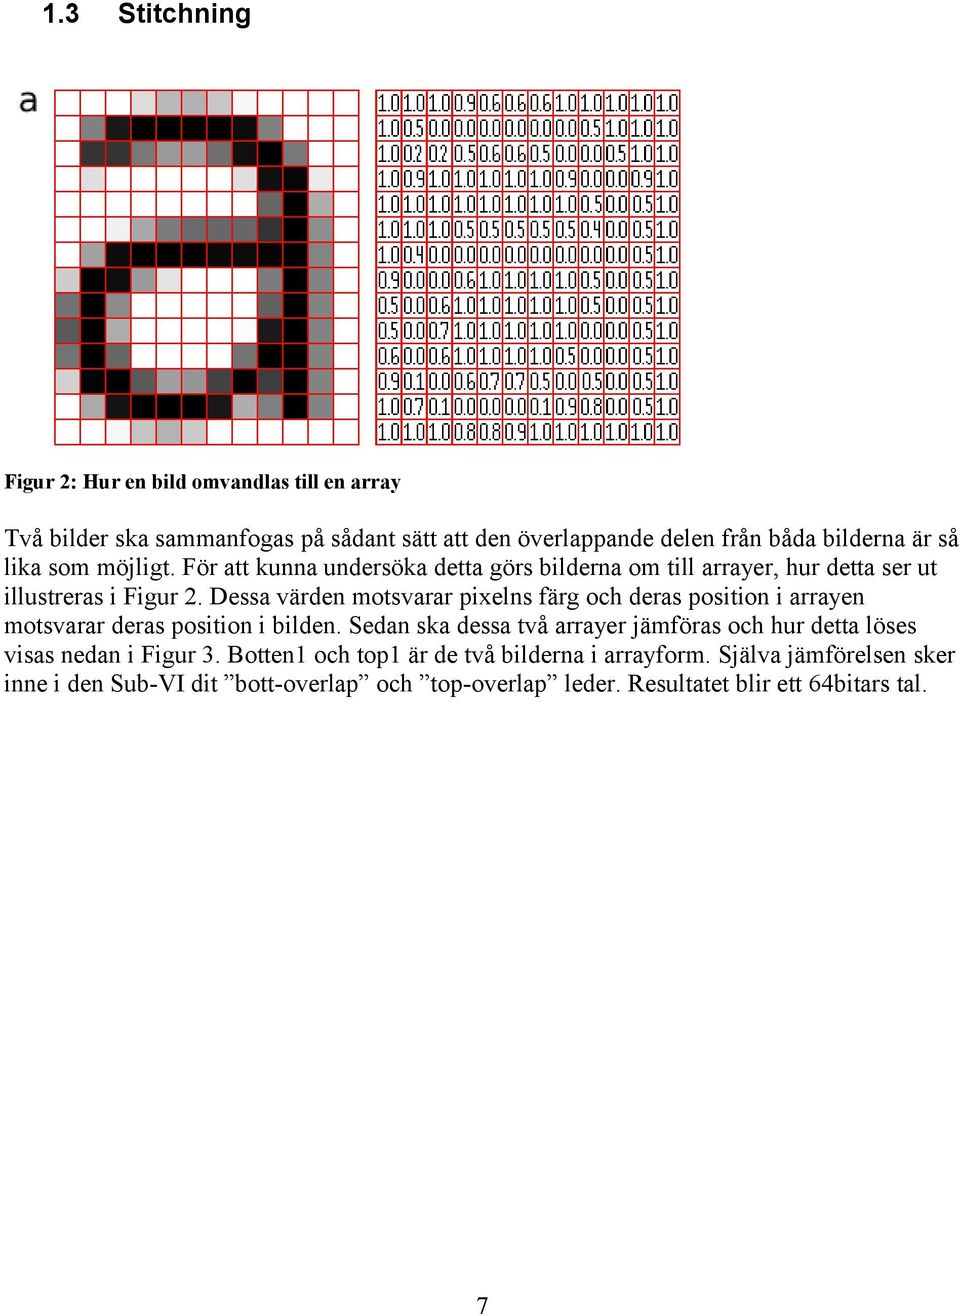 Dessa värden motsvarar pixelns färg och deras position i arrayen motsvarar deras position i bilden.